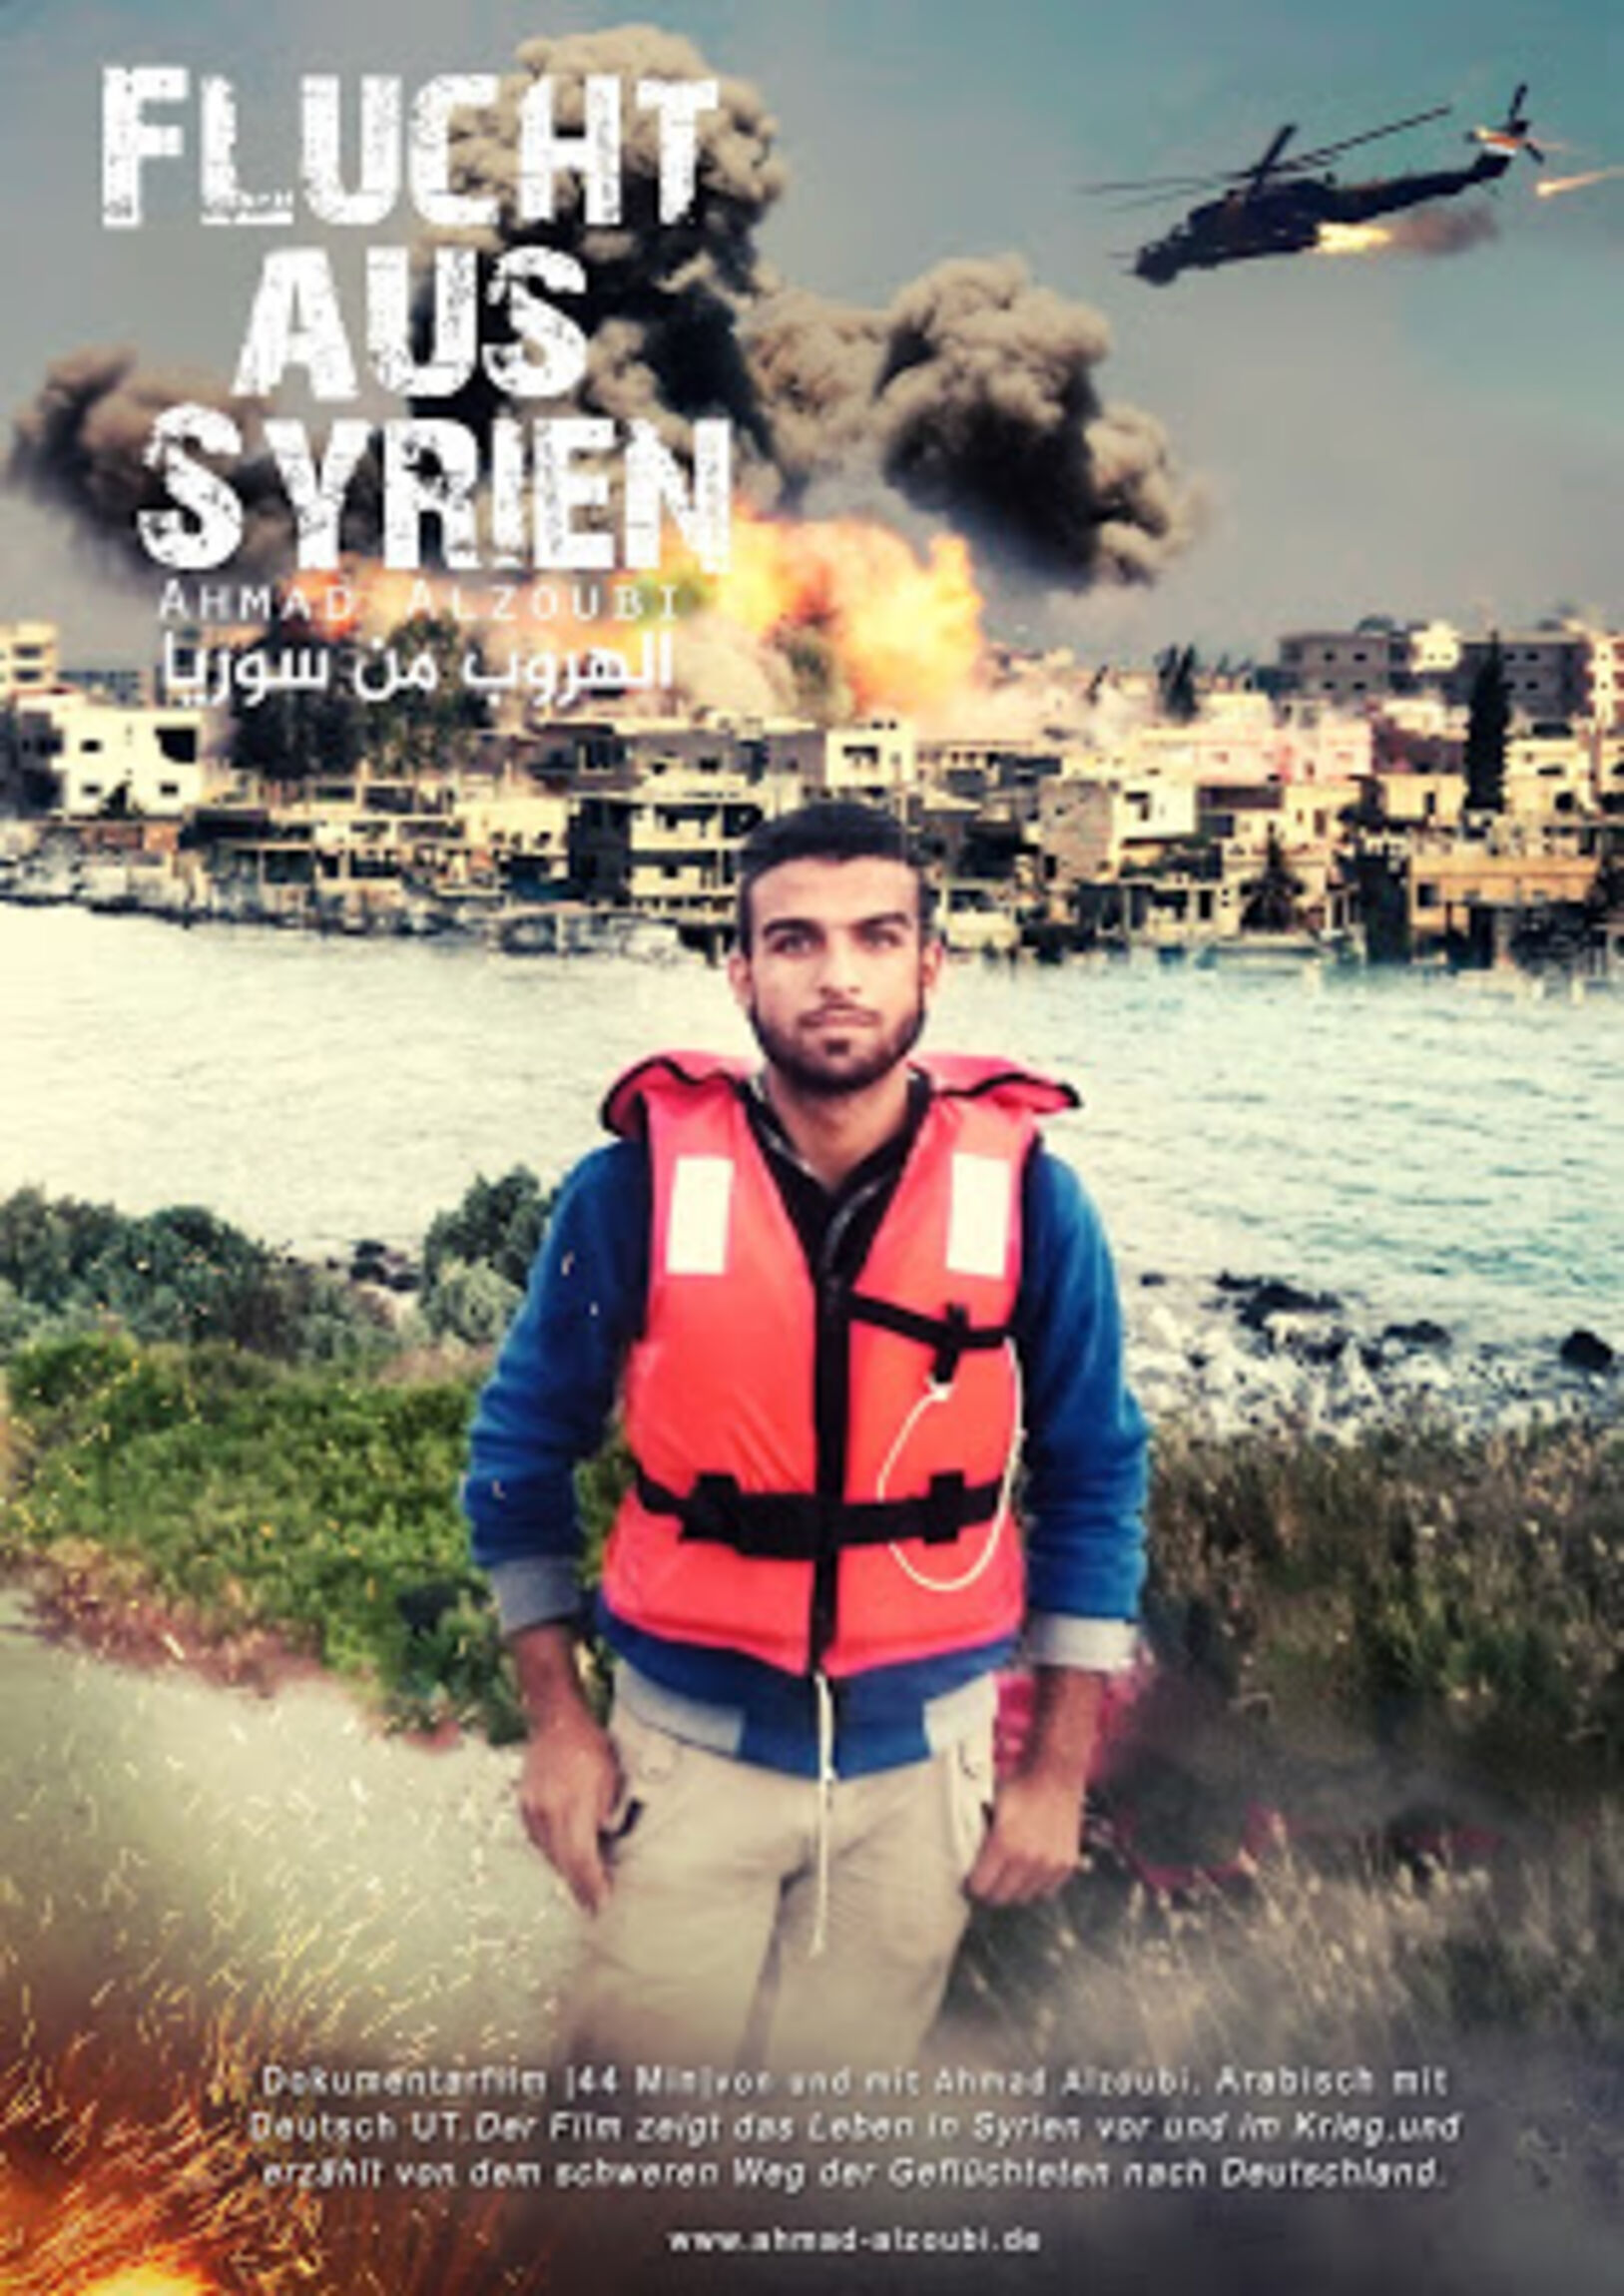 Filmplakat-Flucht-aus-Syrien